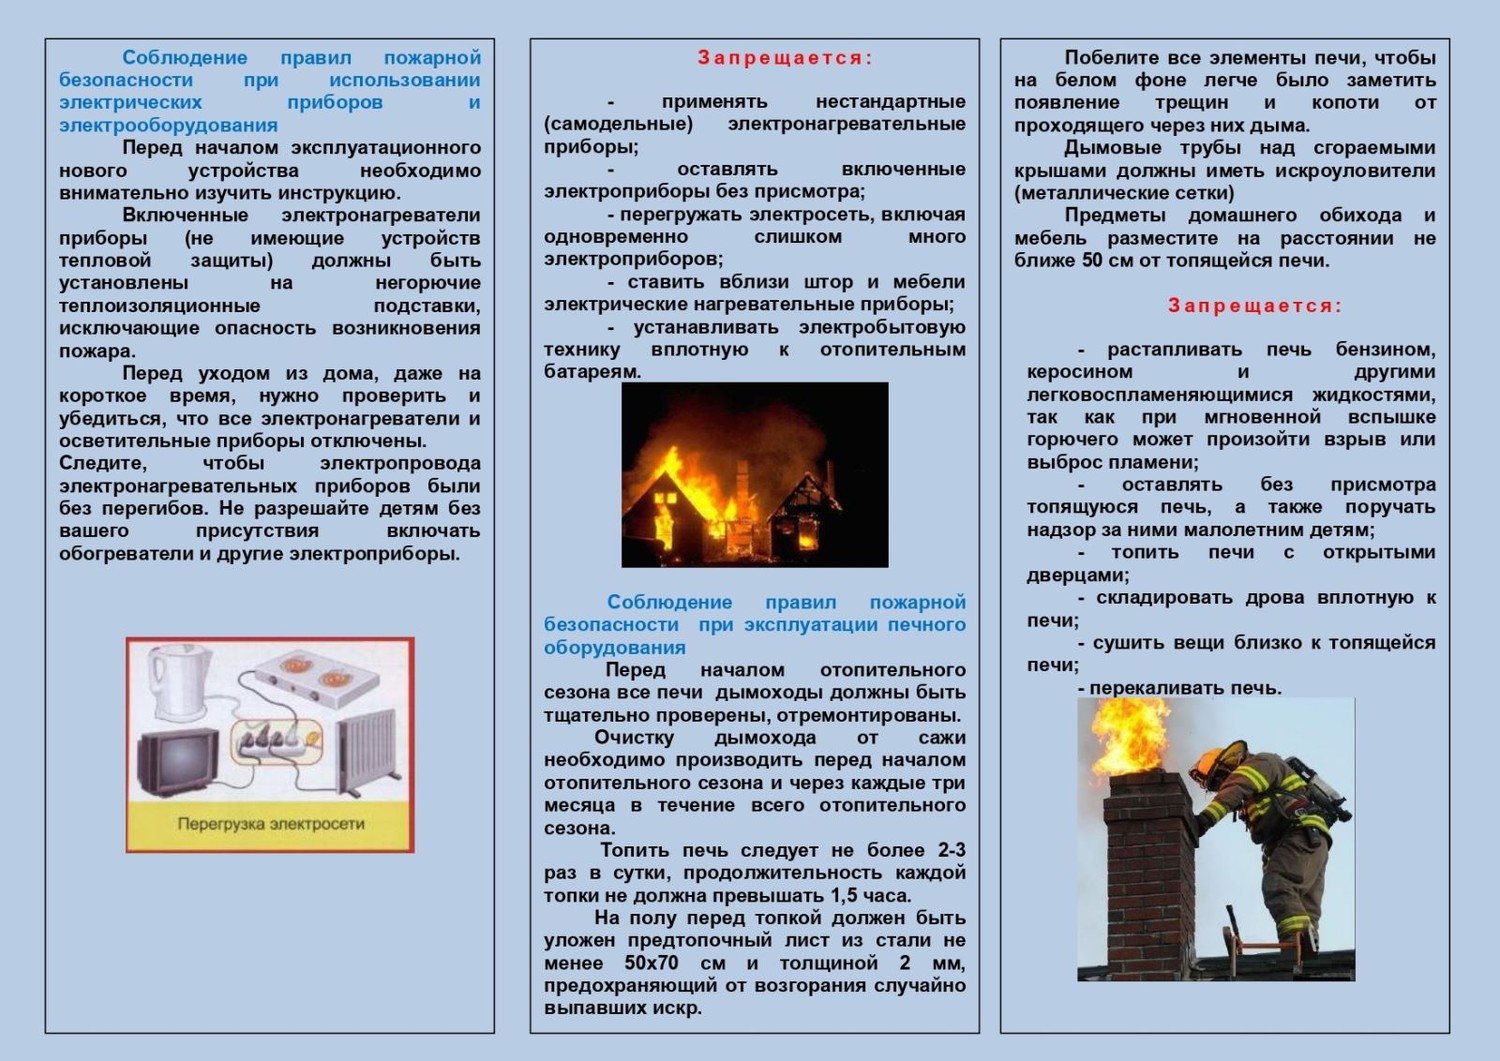 Профилактические мероприятия по противопожарной безопасности в зимний период